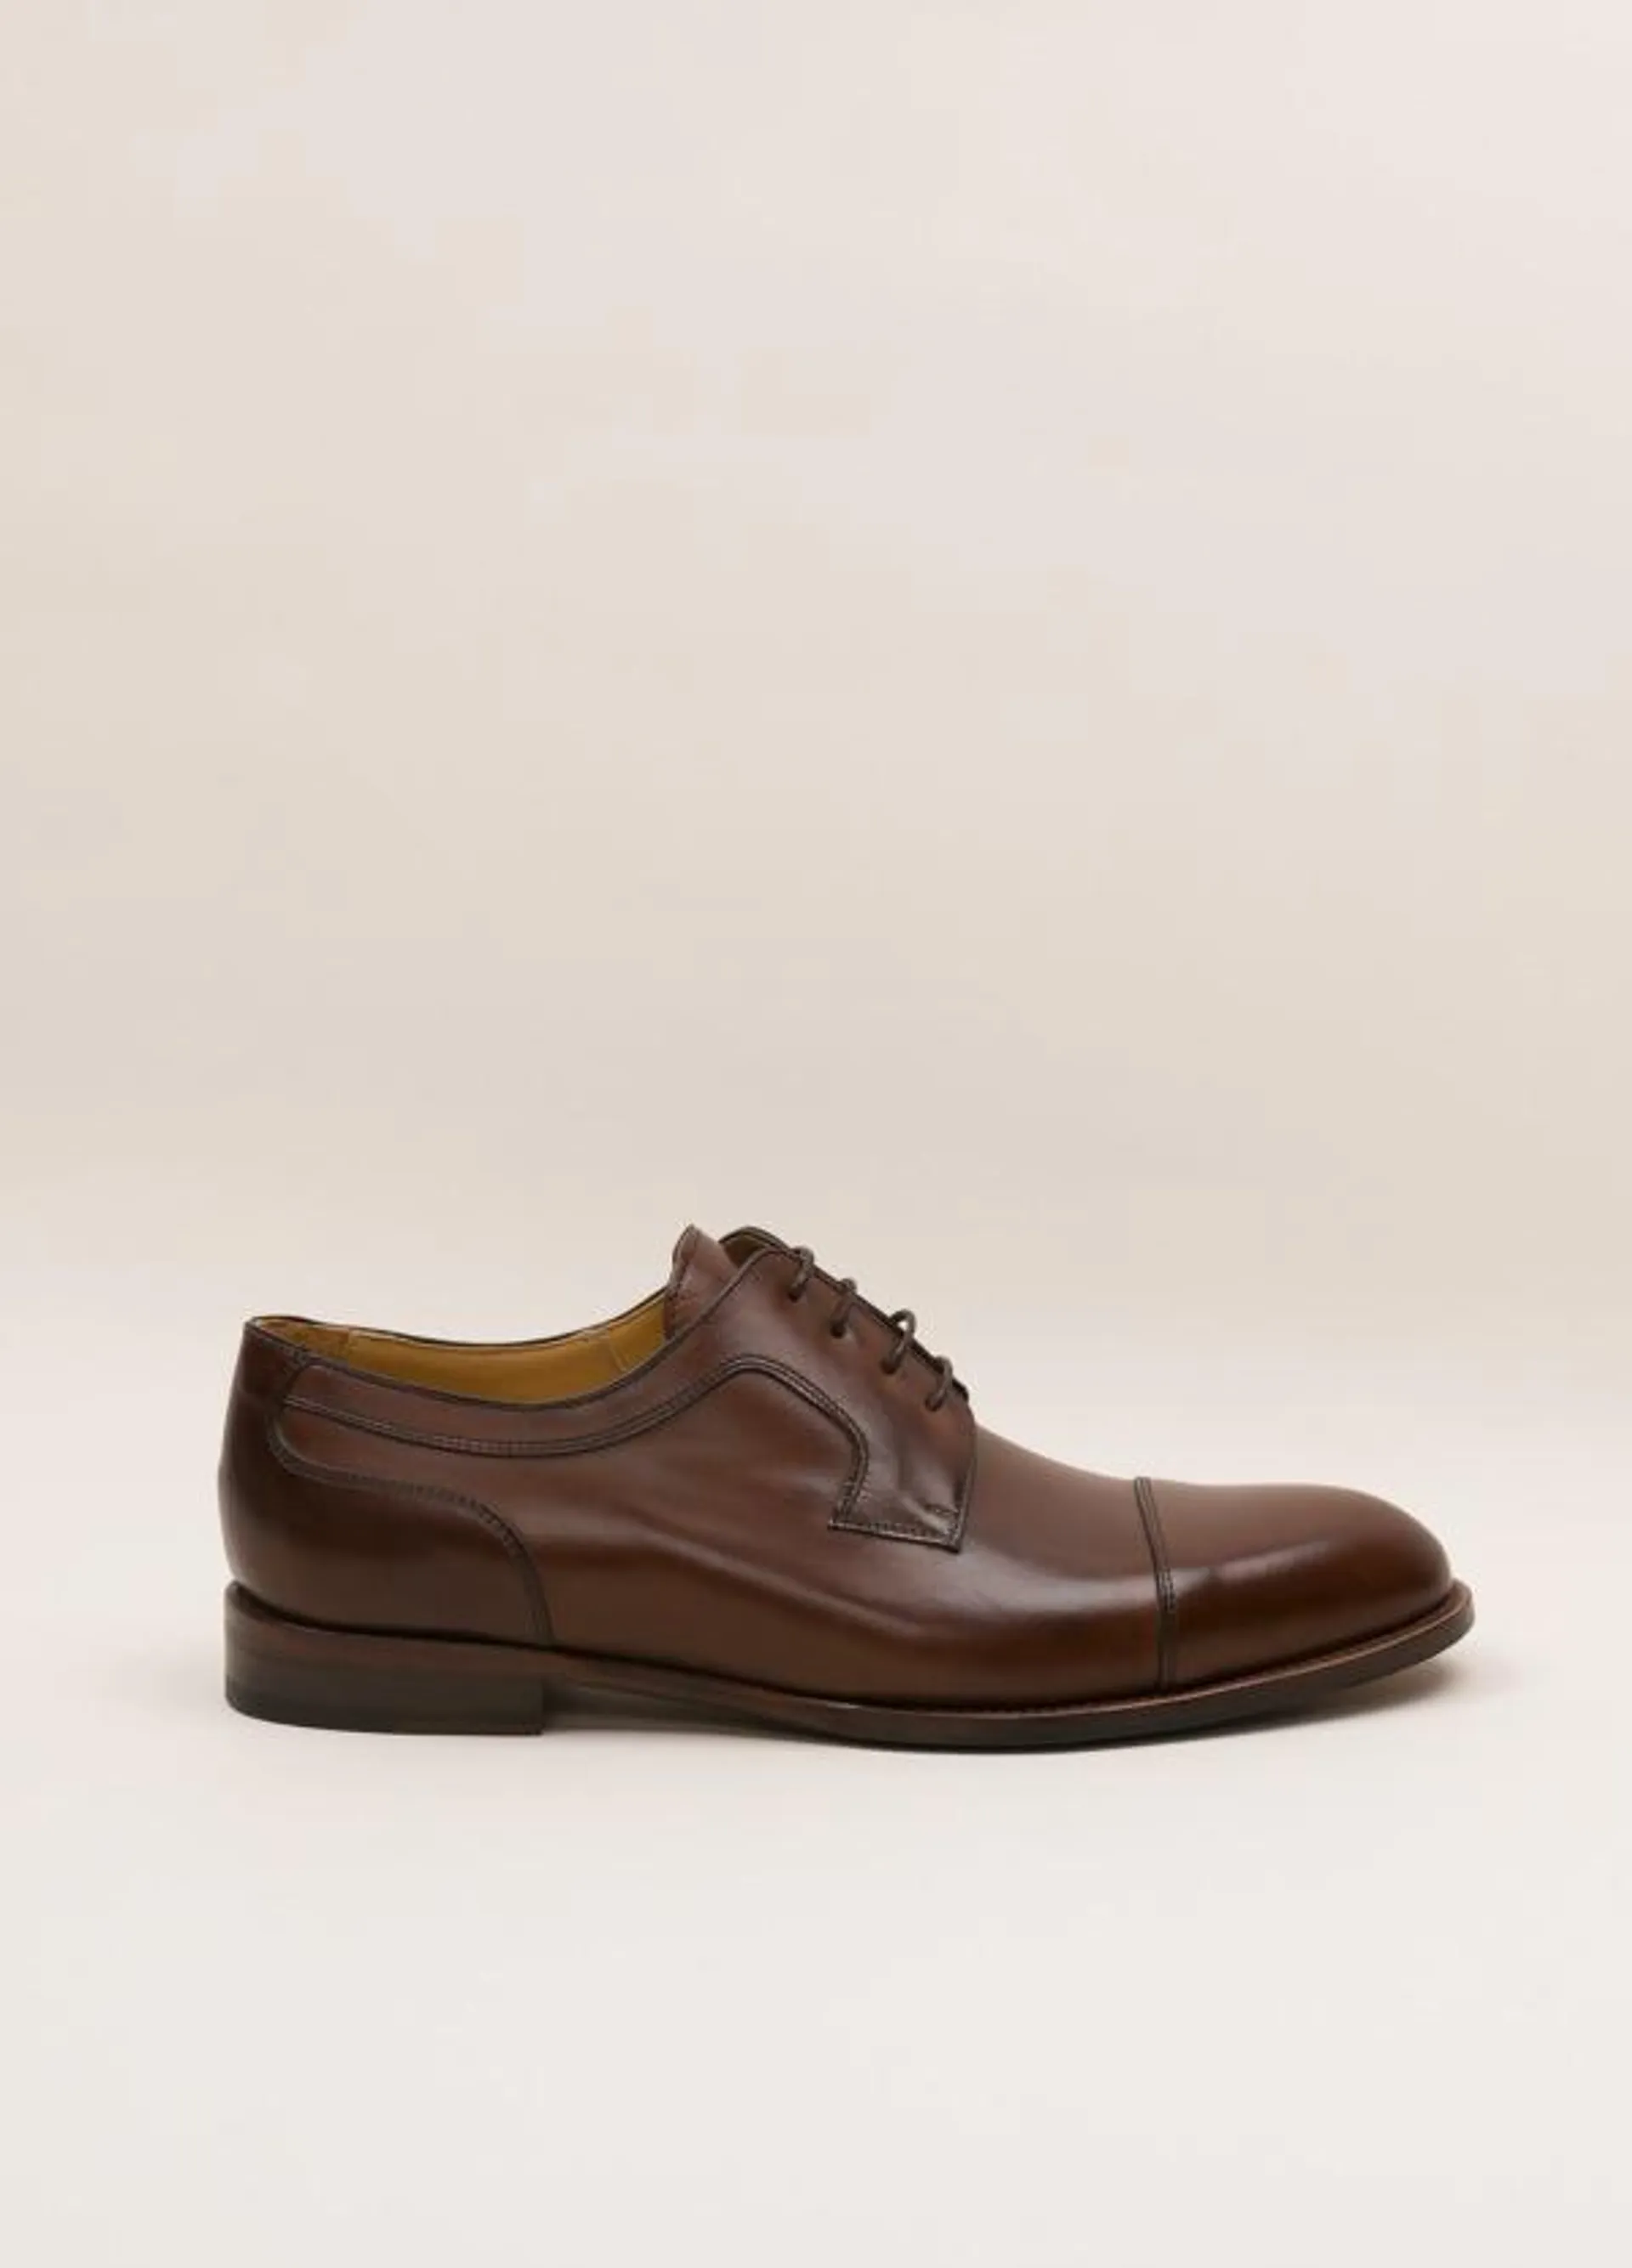 Zapato Formal Wear FUREST COLECCIÓN marrón